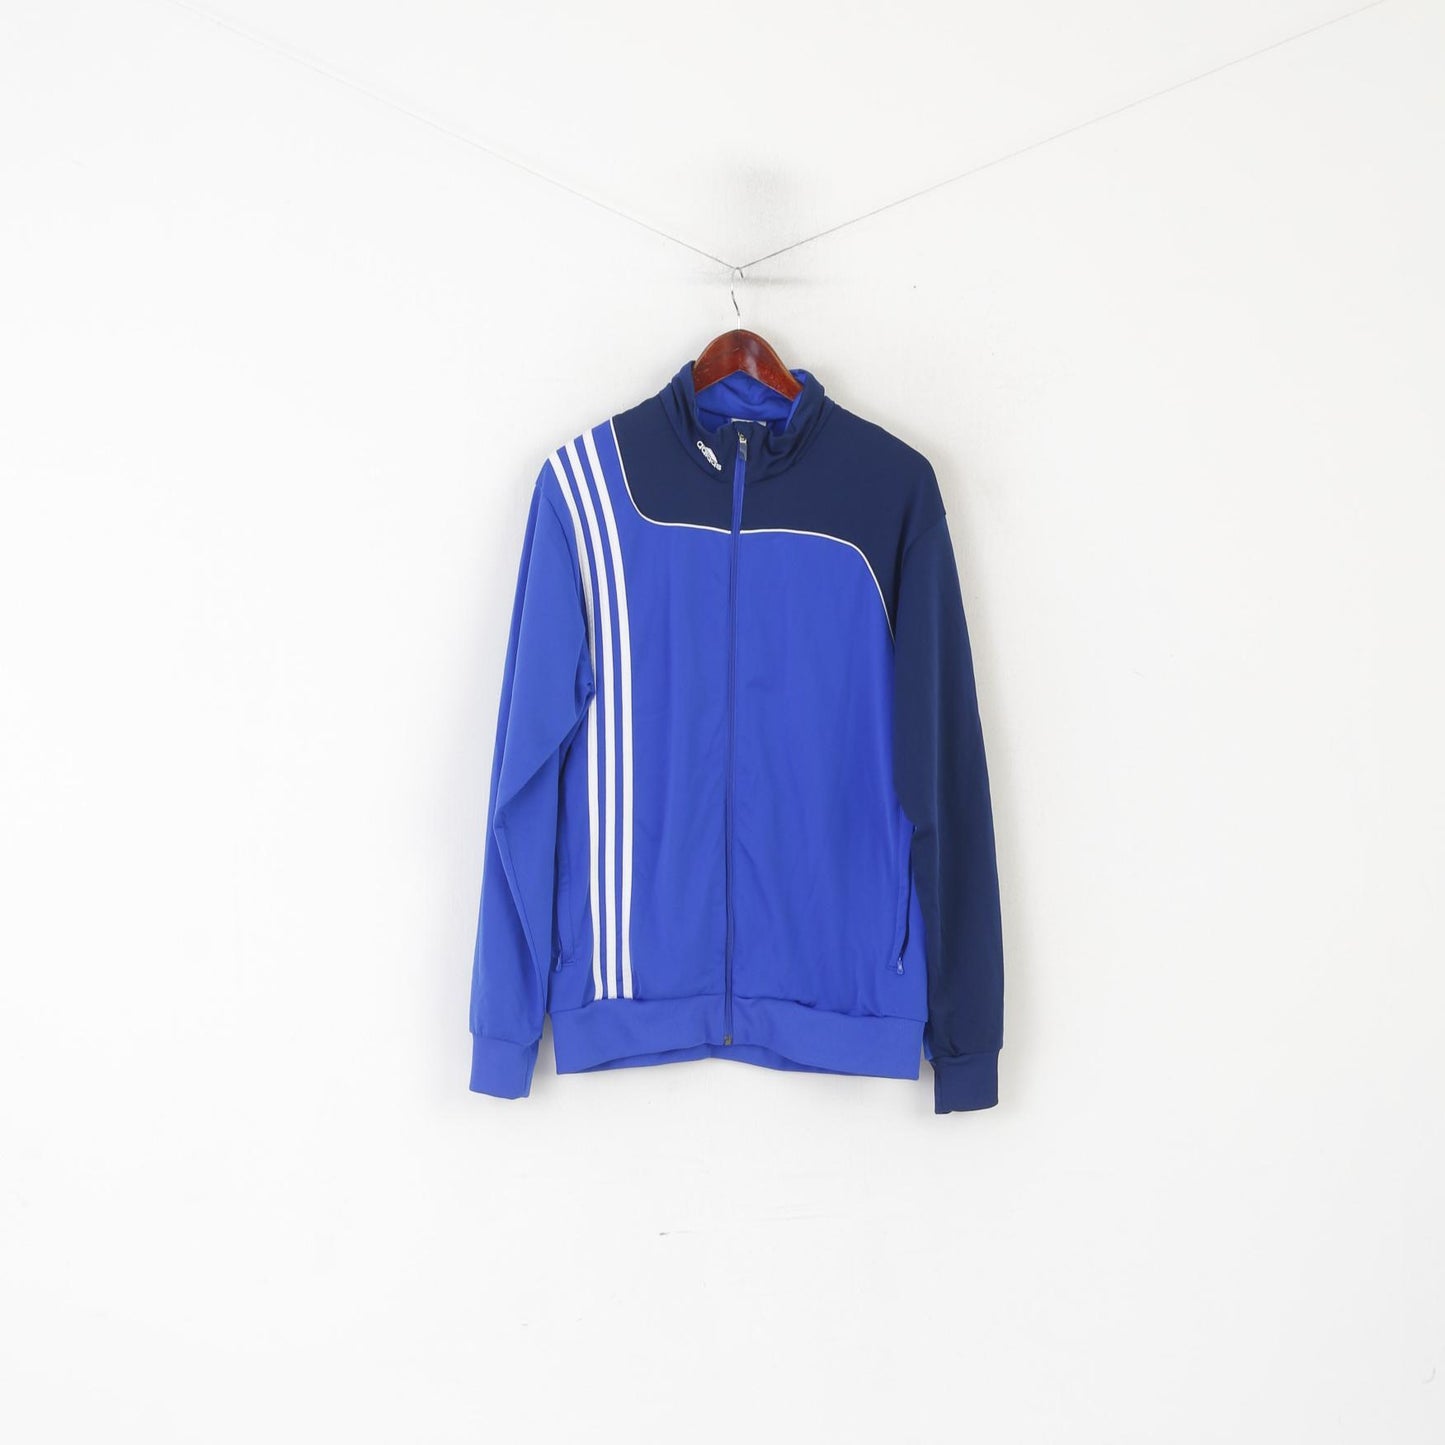 Felpa Adidas da uomo 42/44 L blu lucido vintage con cerniera intera sportiva da allenamento